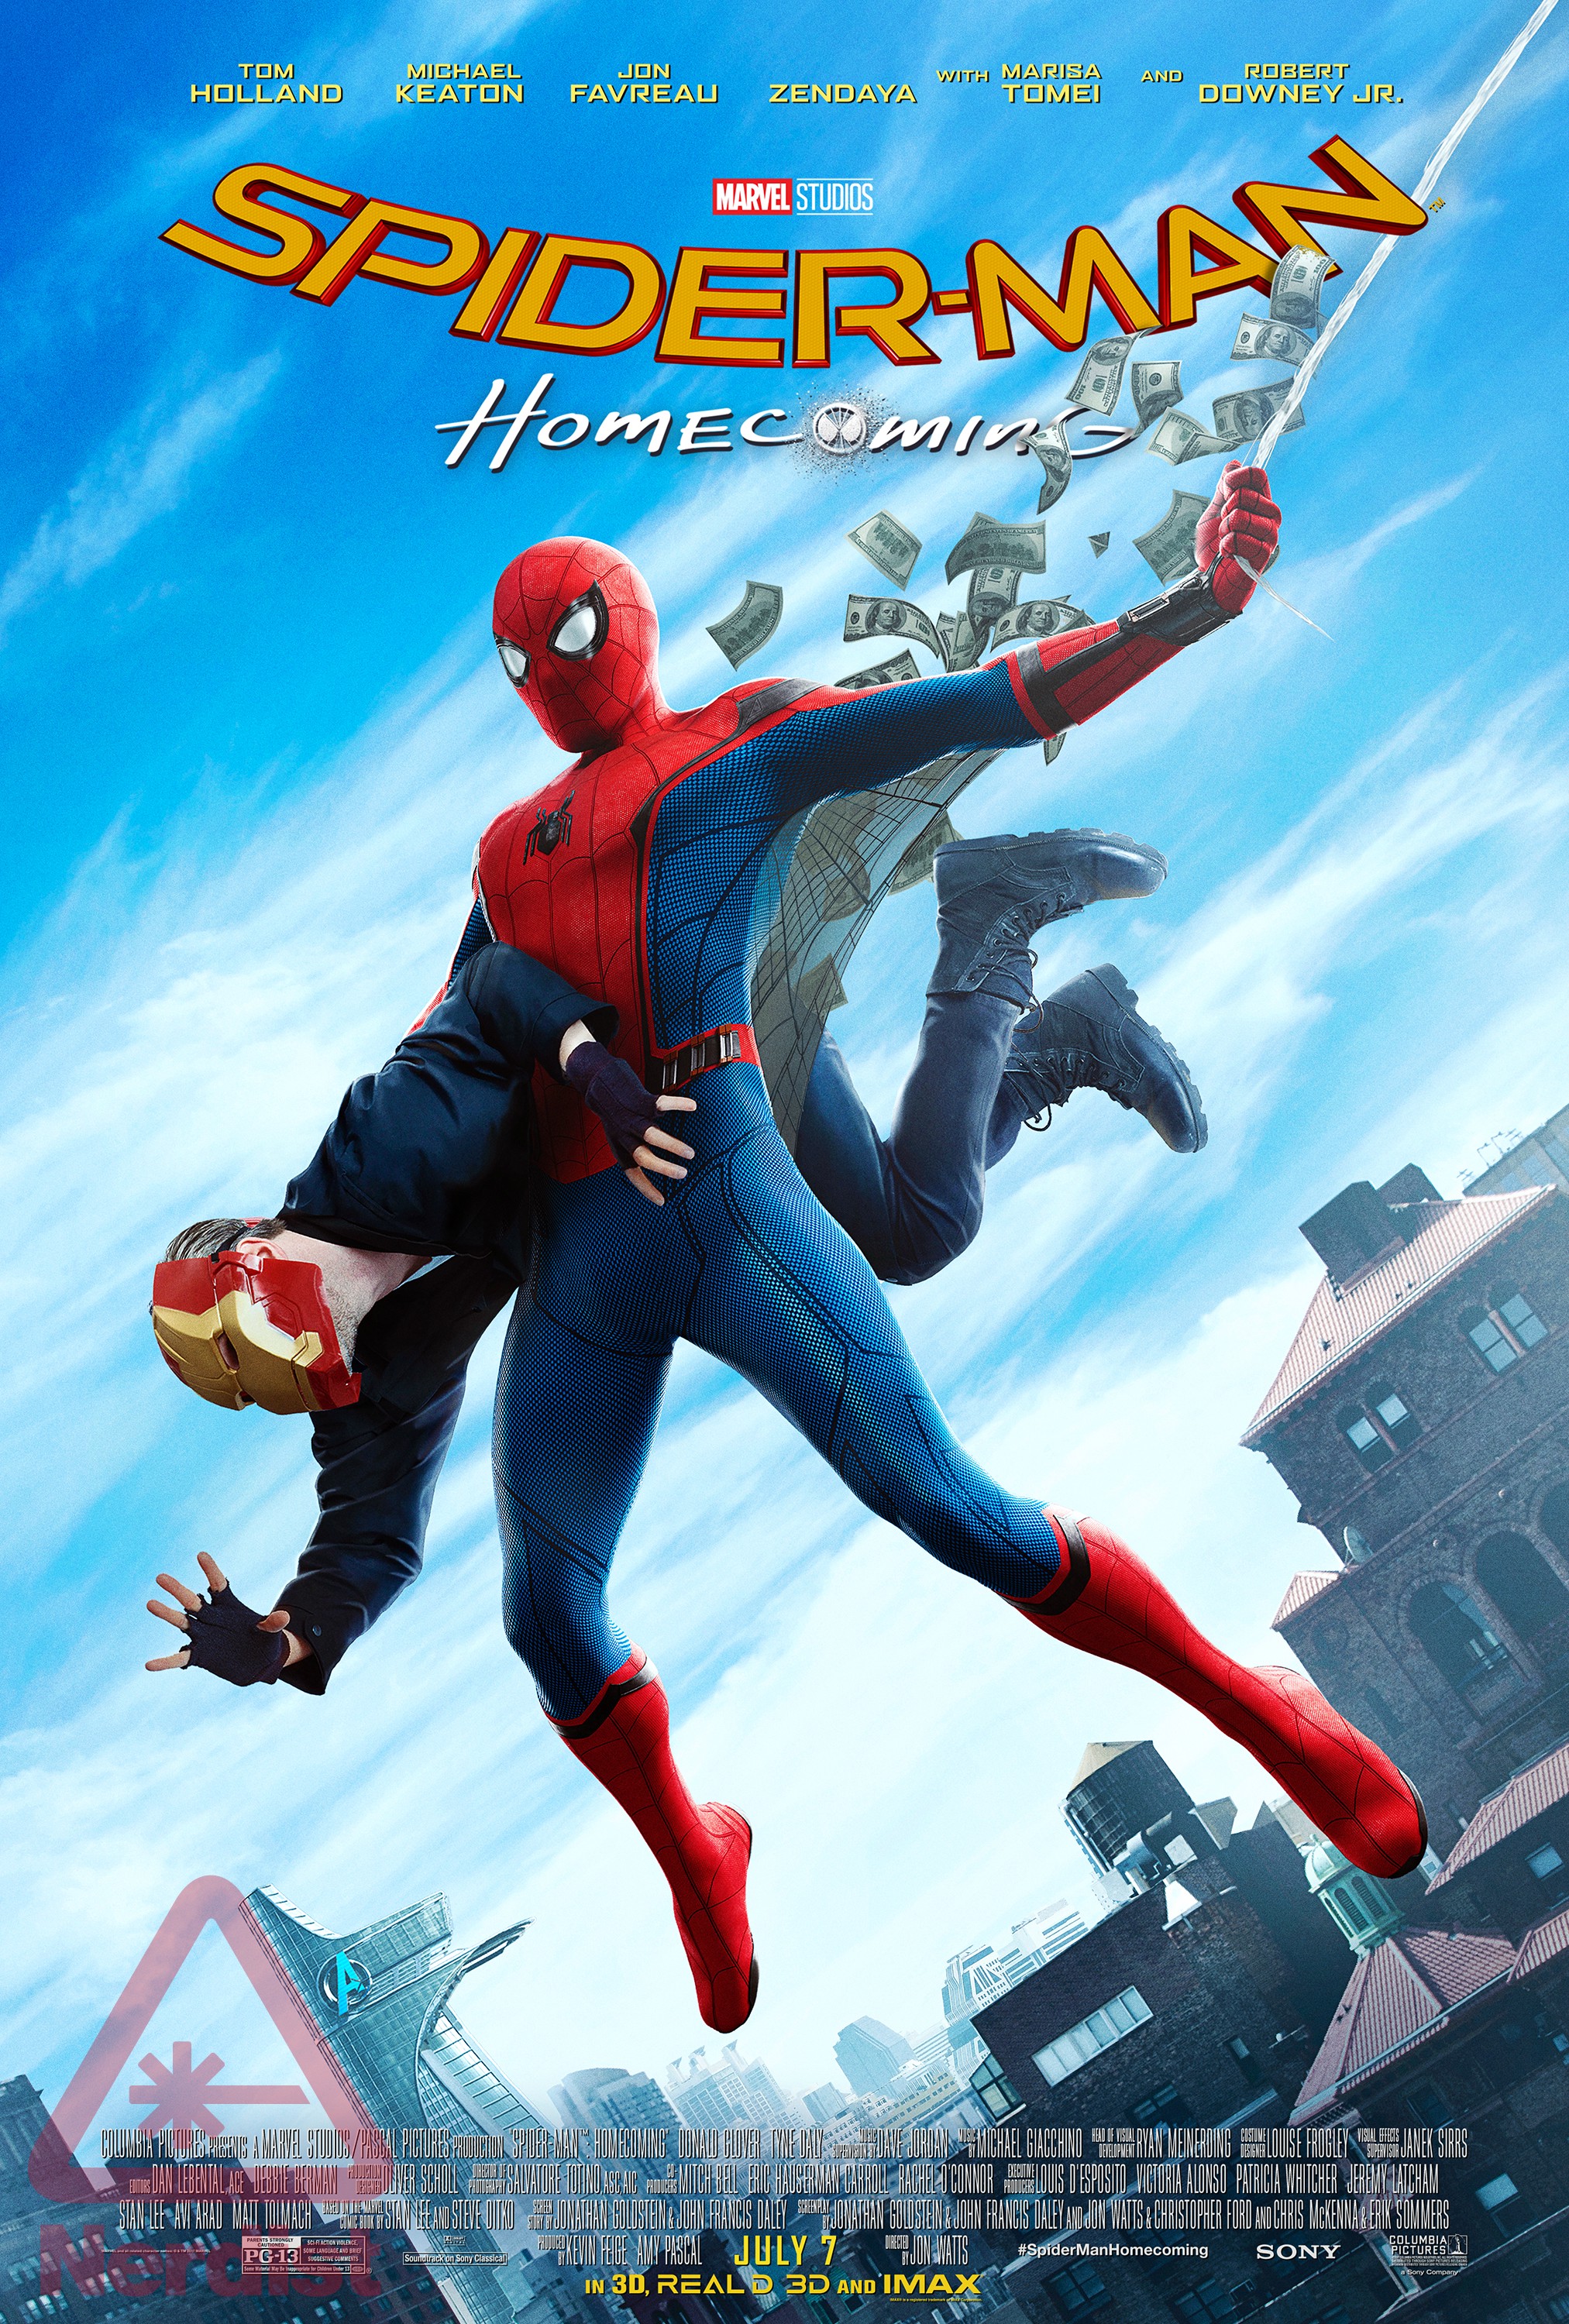 Spider-Man film series, Spider-Man Wiki